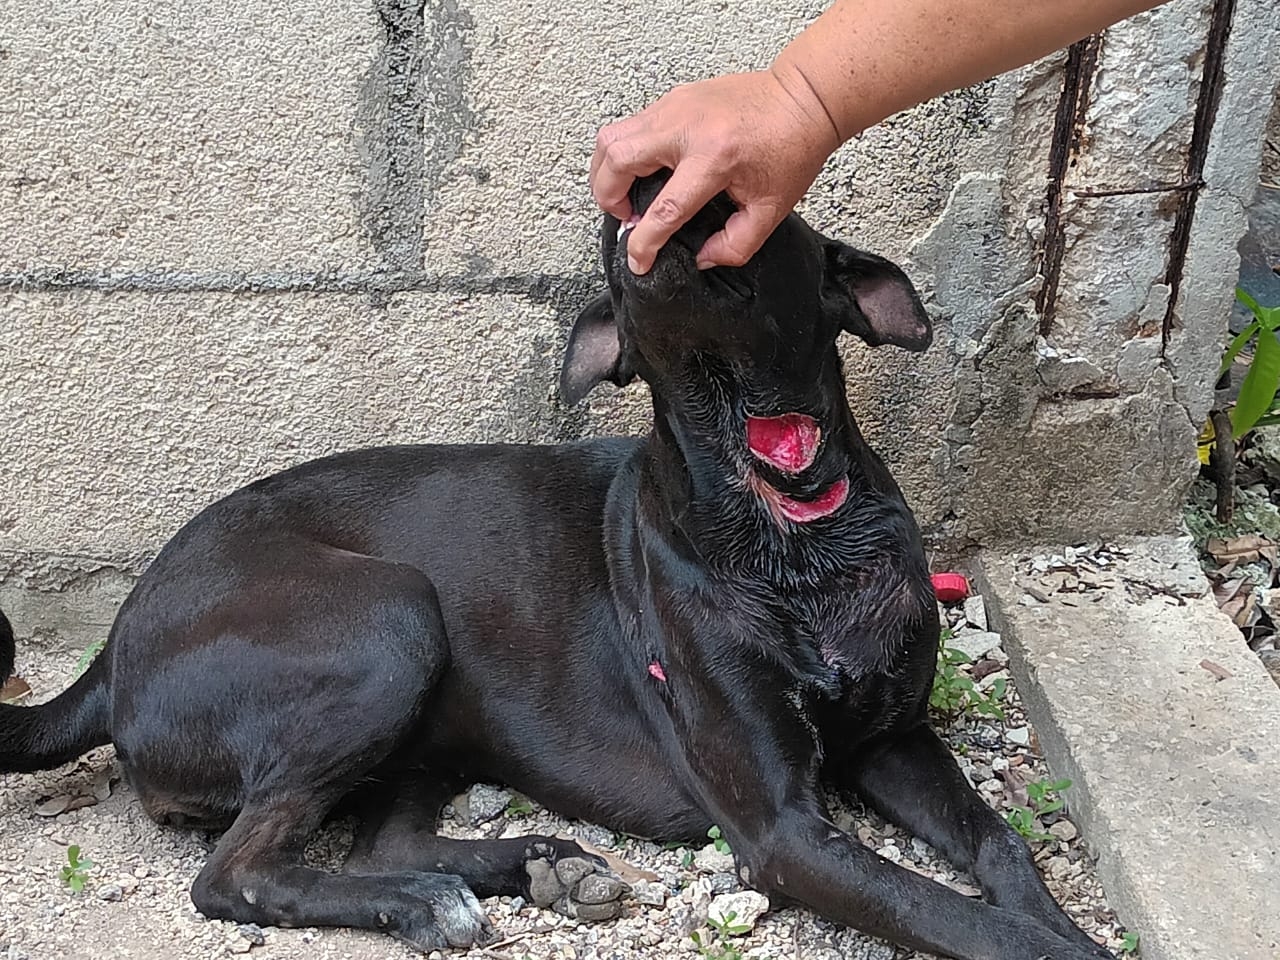 Surge nuevo caso de maltrato animal en Yucatán; machetean a una perrita en Sinanché